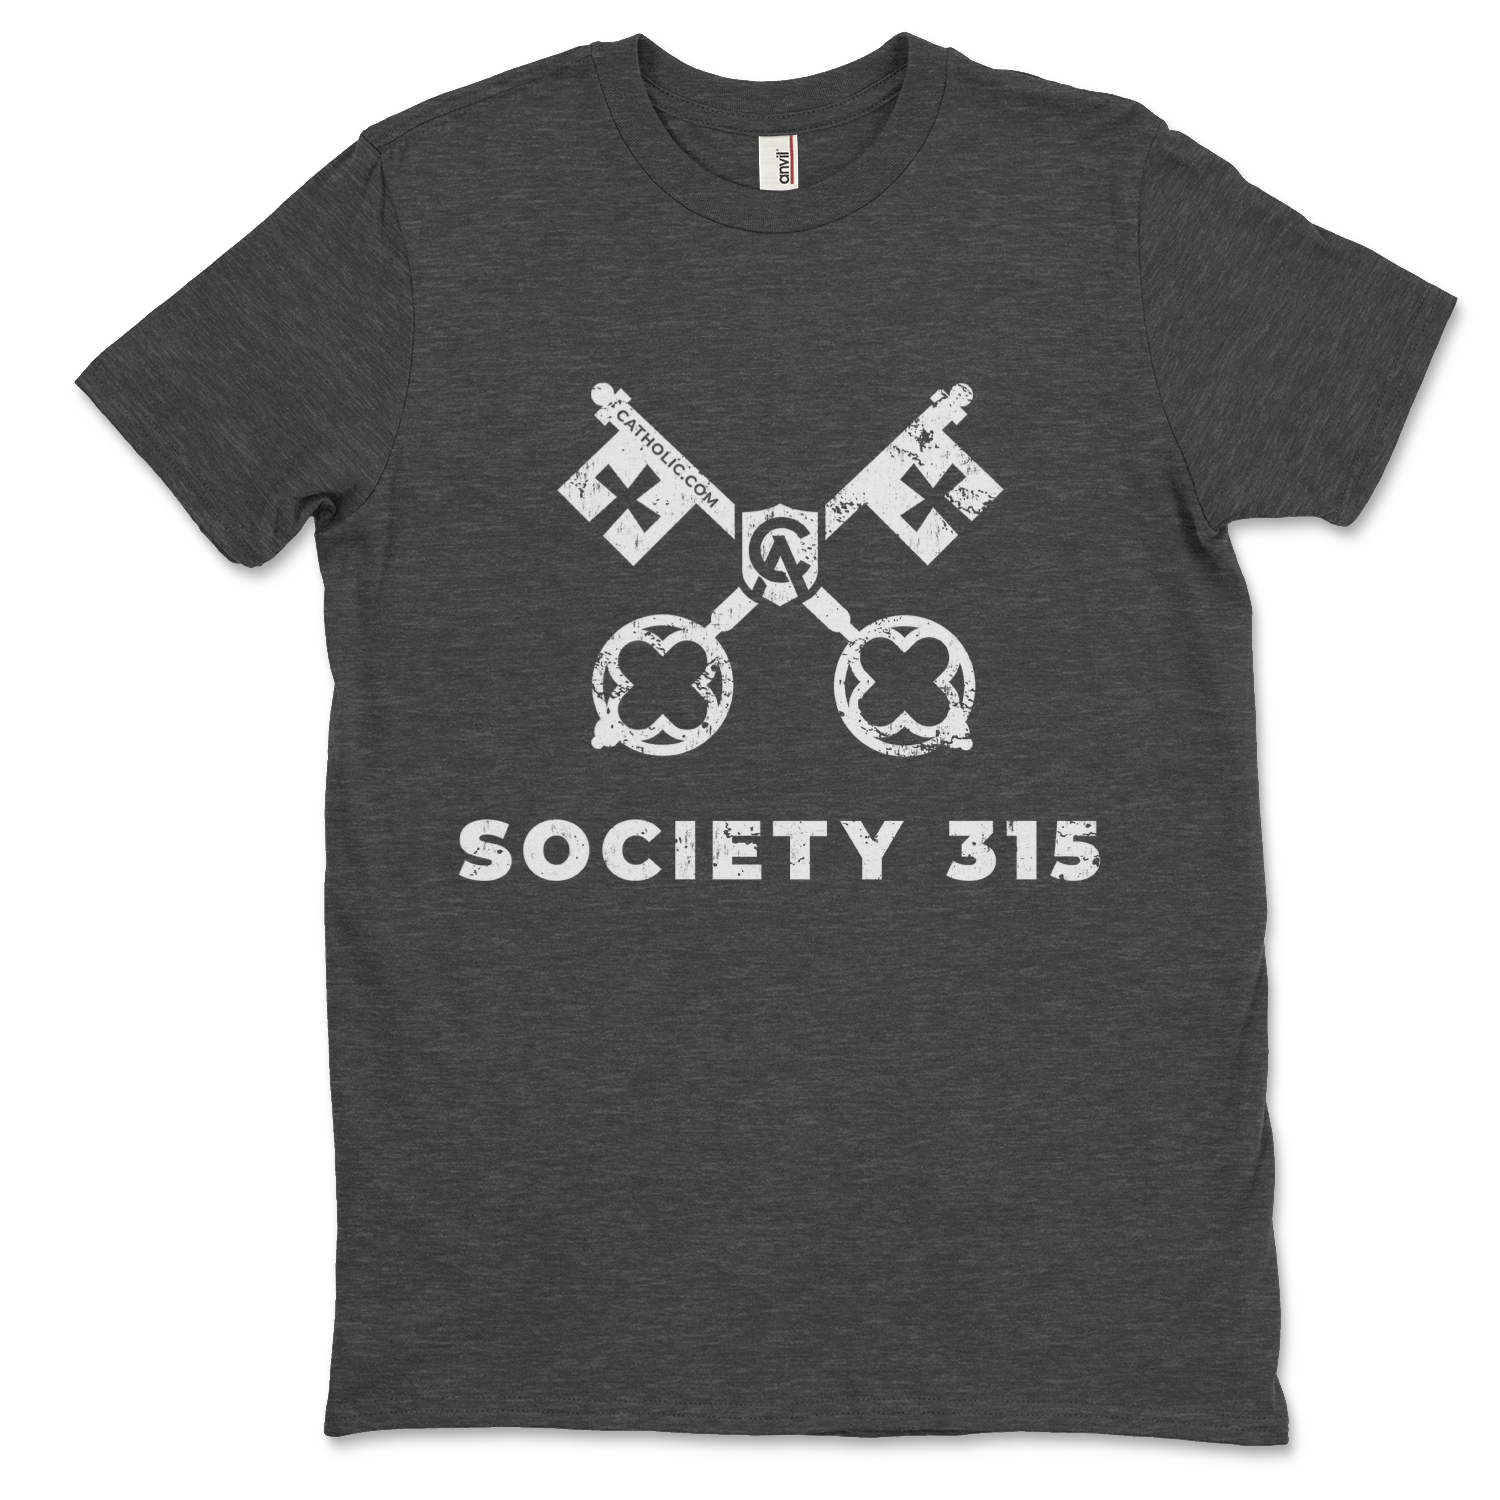 Society 315 Tee